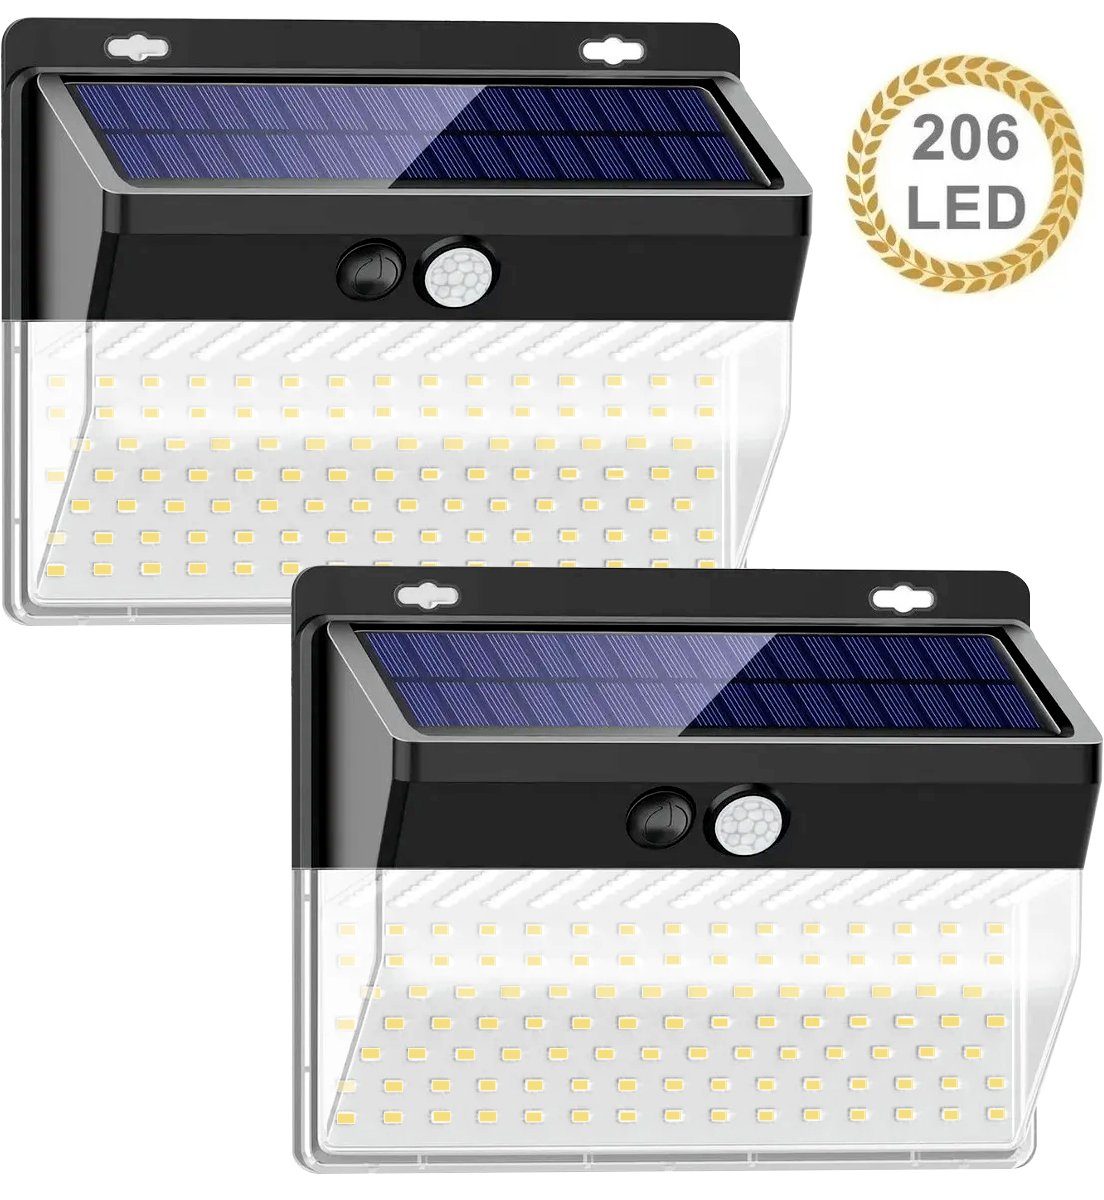 Oneid LED Solarleuchte Induktiv Solarleuchte für Außen,206 LED Solarlampe Außen 2 Stück